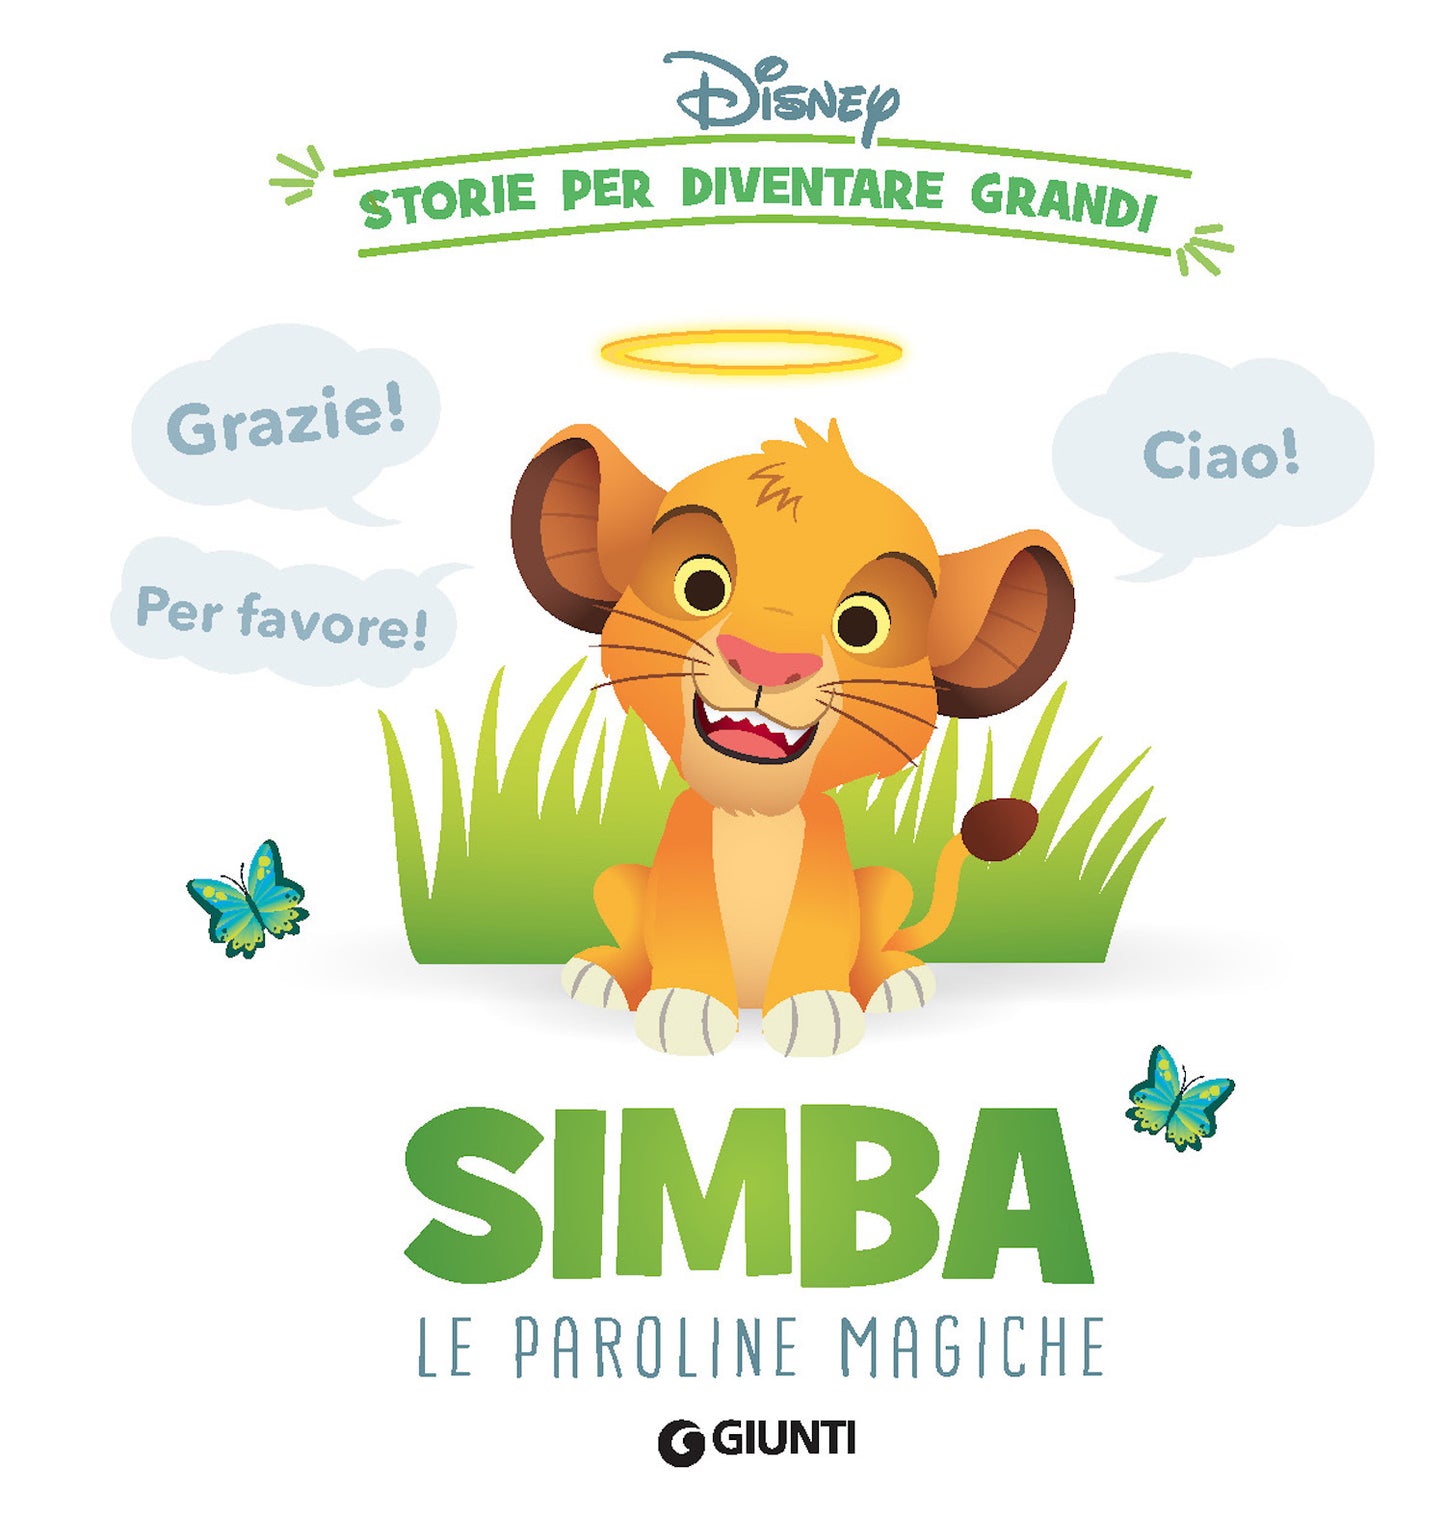 Disney Storie per diventare grandi - Simba Le paroline magiche